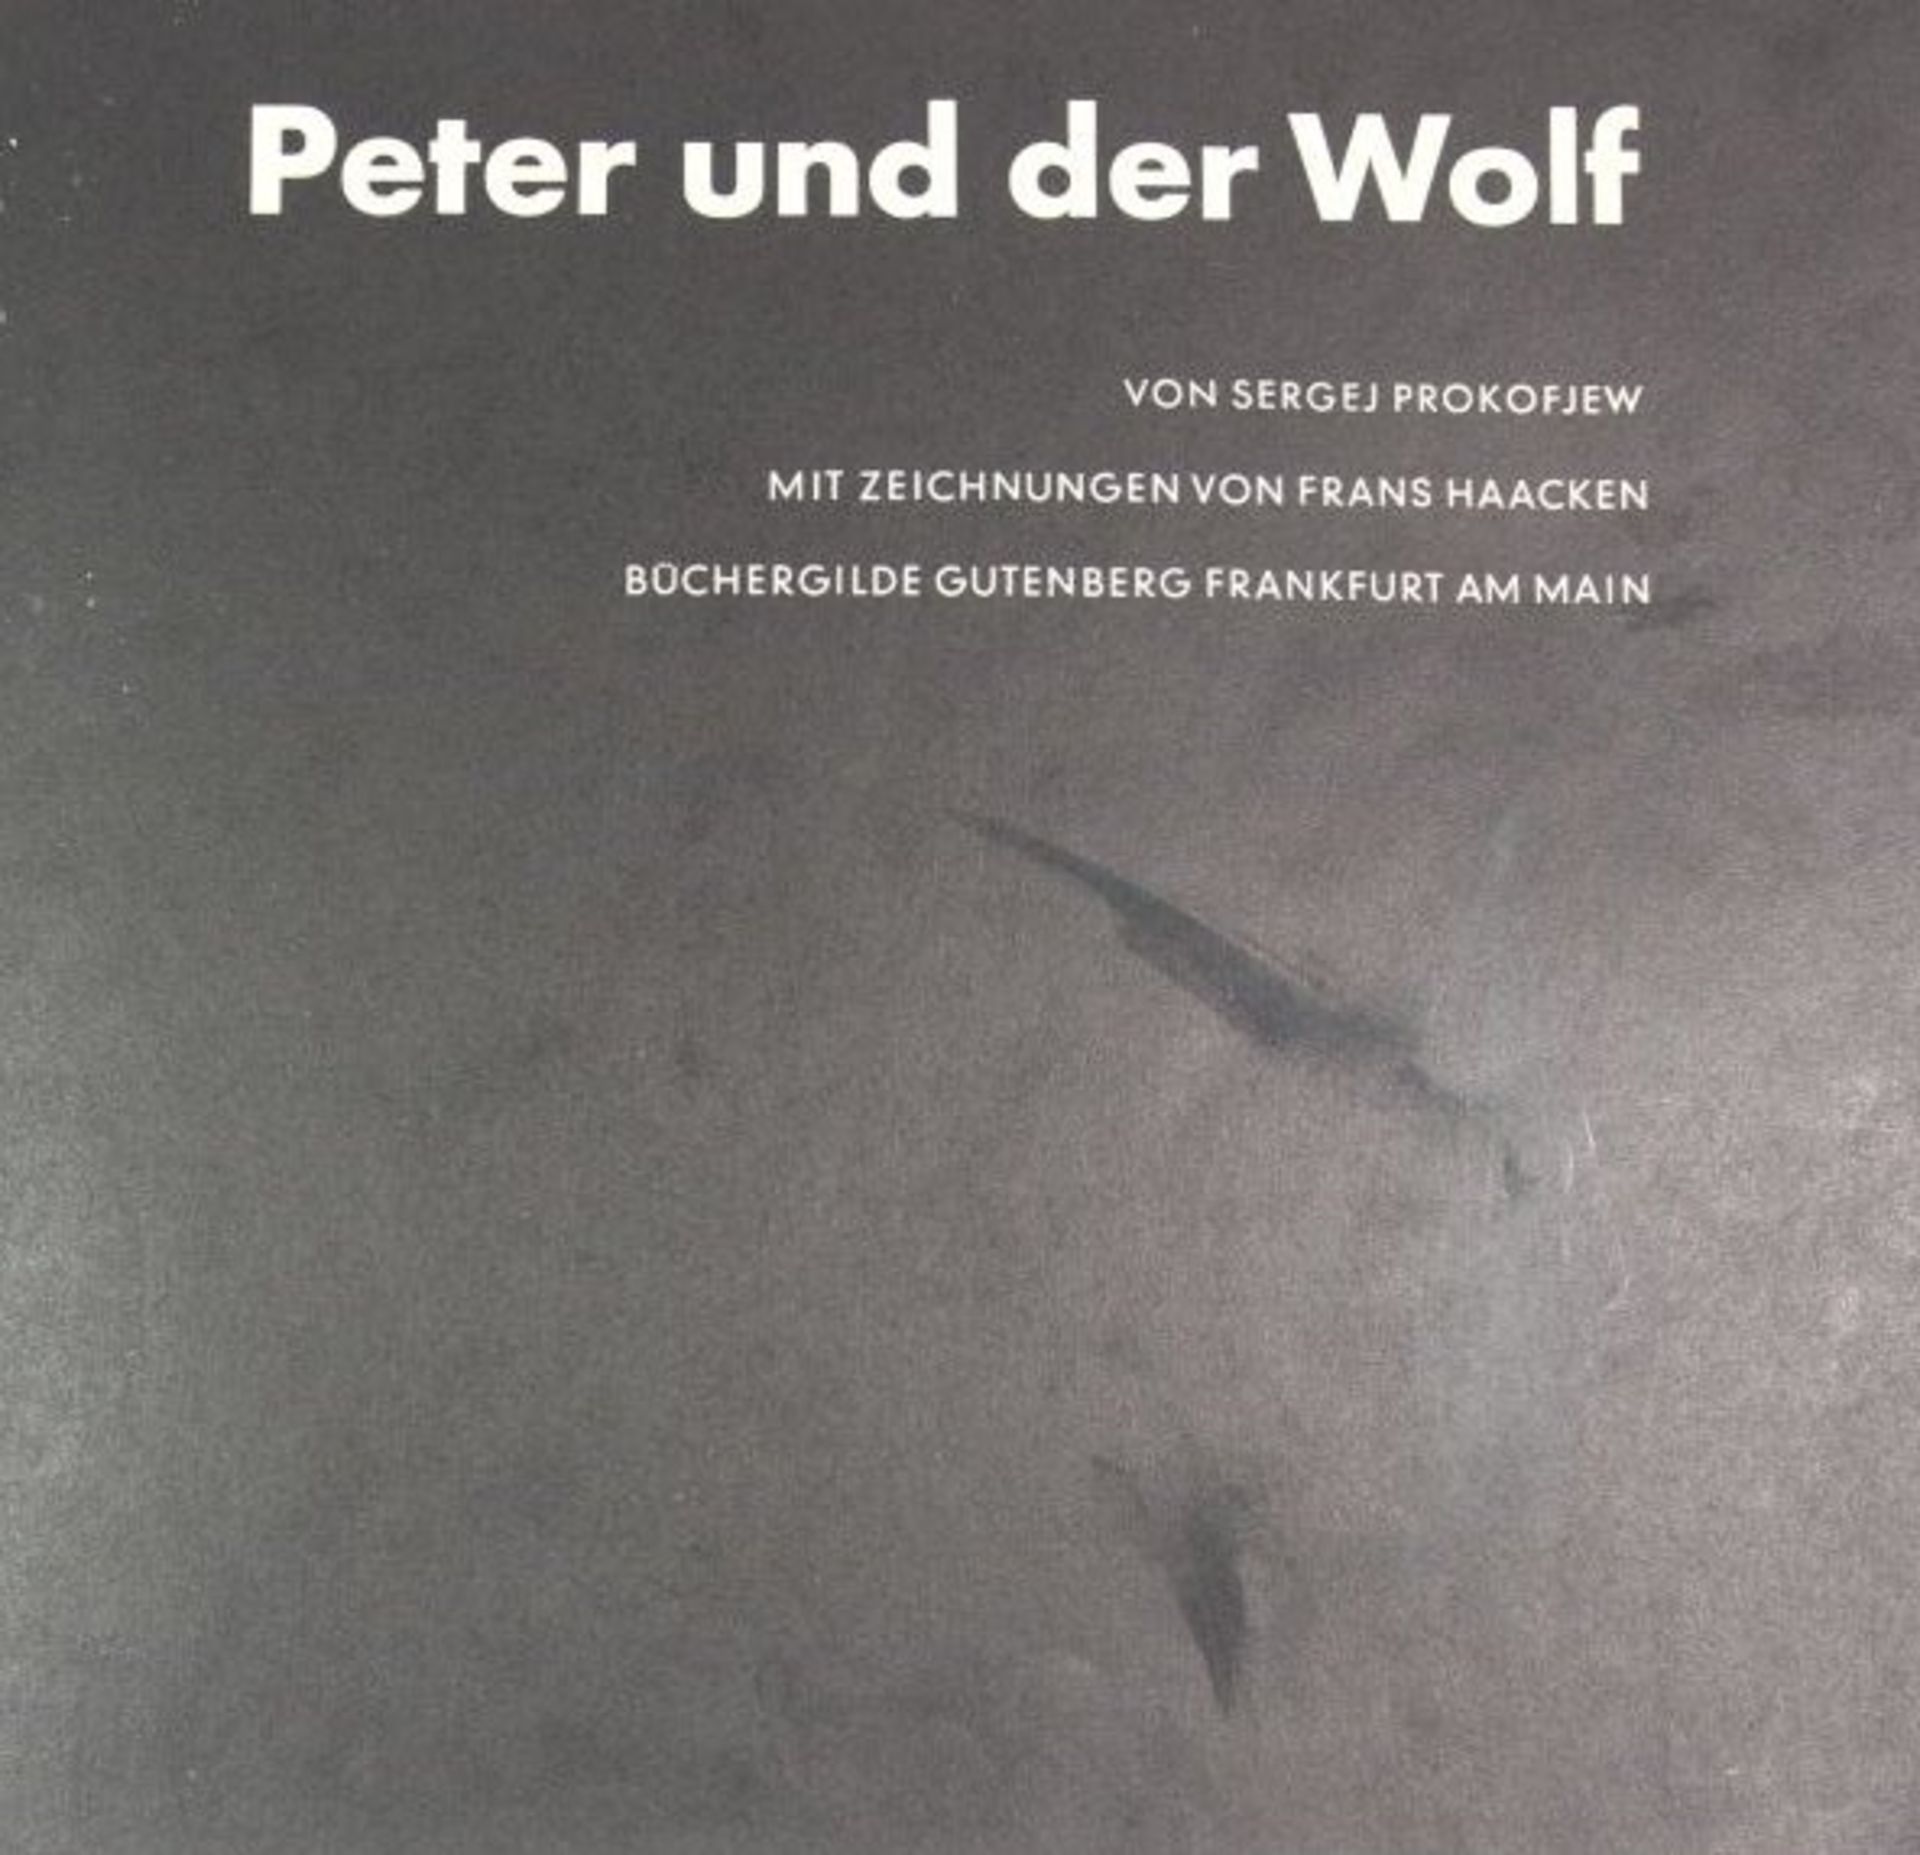 Peter und der Wolf, Sergej Prokofjew, 1960. - Bild 2 aus 3